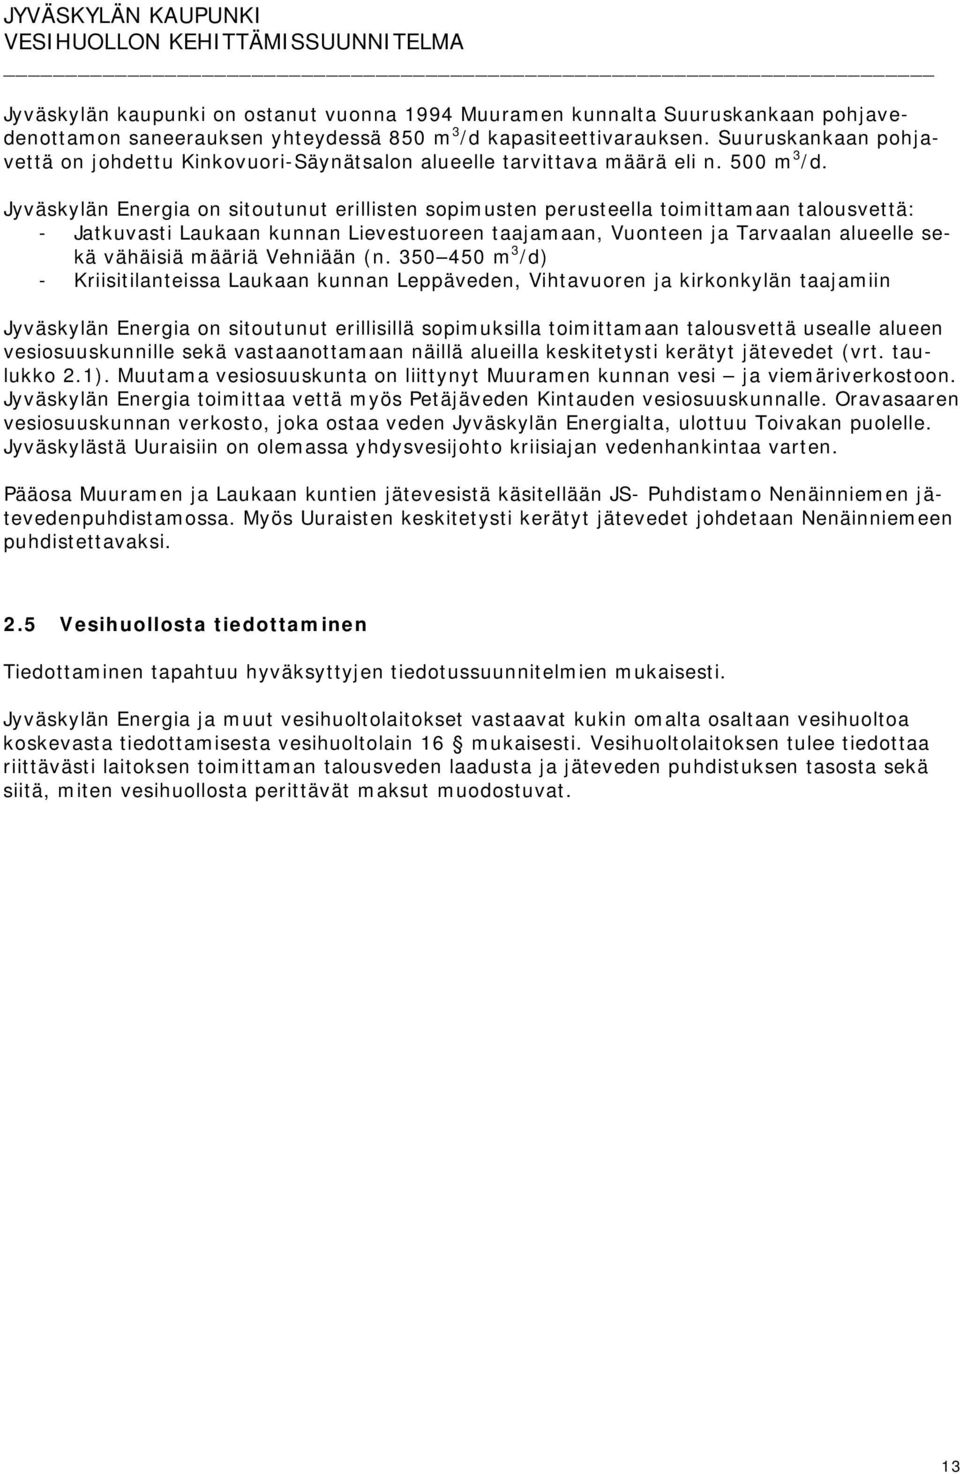 Jyväskylän Energia on sitoutunut erillisten sopimusten perusteella toimittamaan talousvettä: - Jatkuvasti Laukaan kunnan Lievestuoreen taajamaan, Vuonteen ja Tarvaalan alueelle sekä vähäisiä määriä